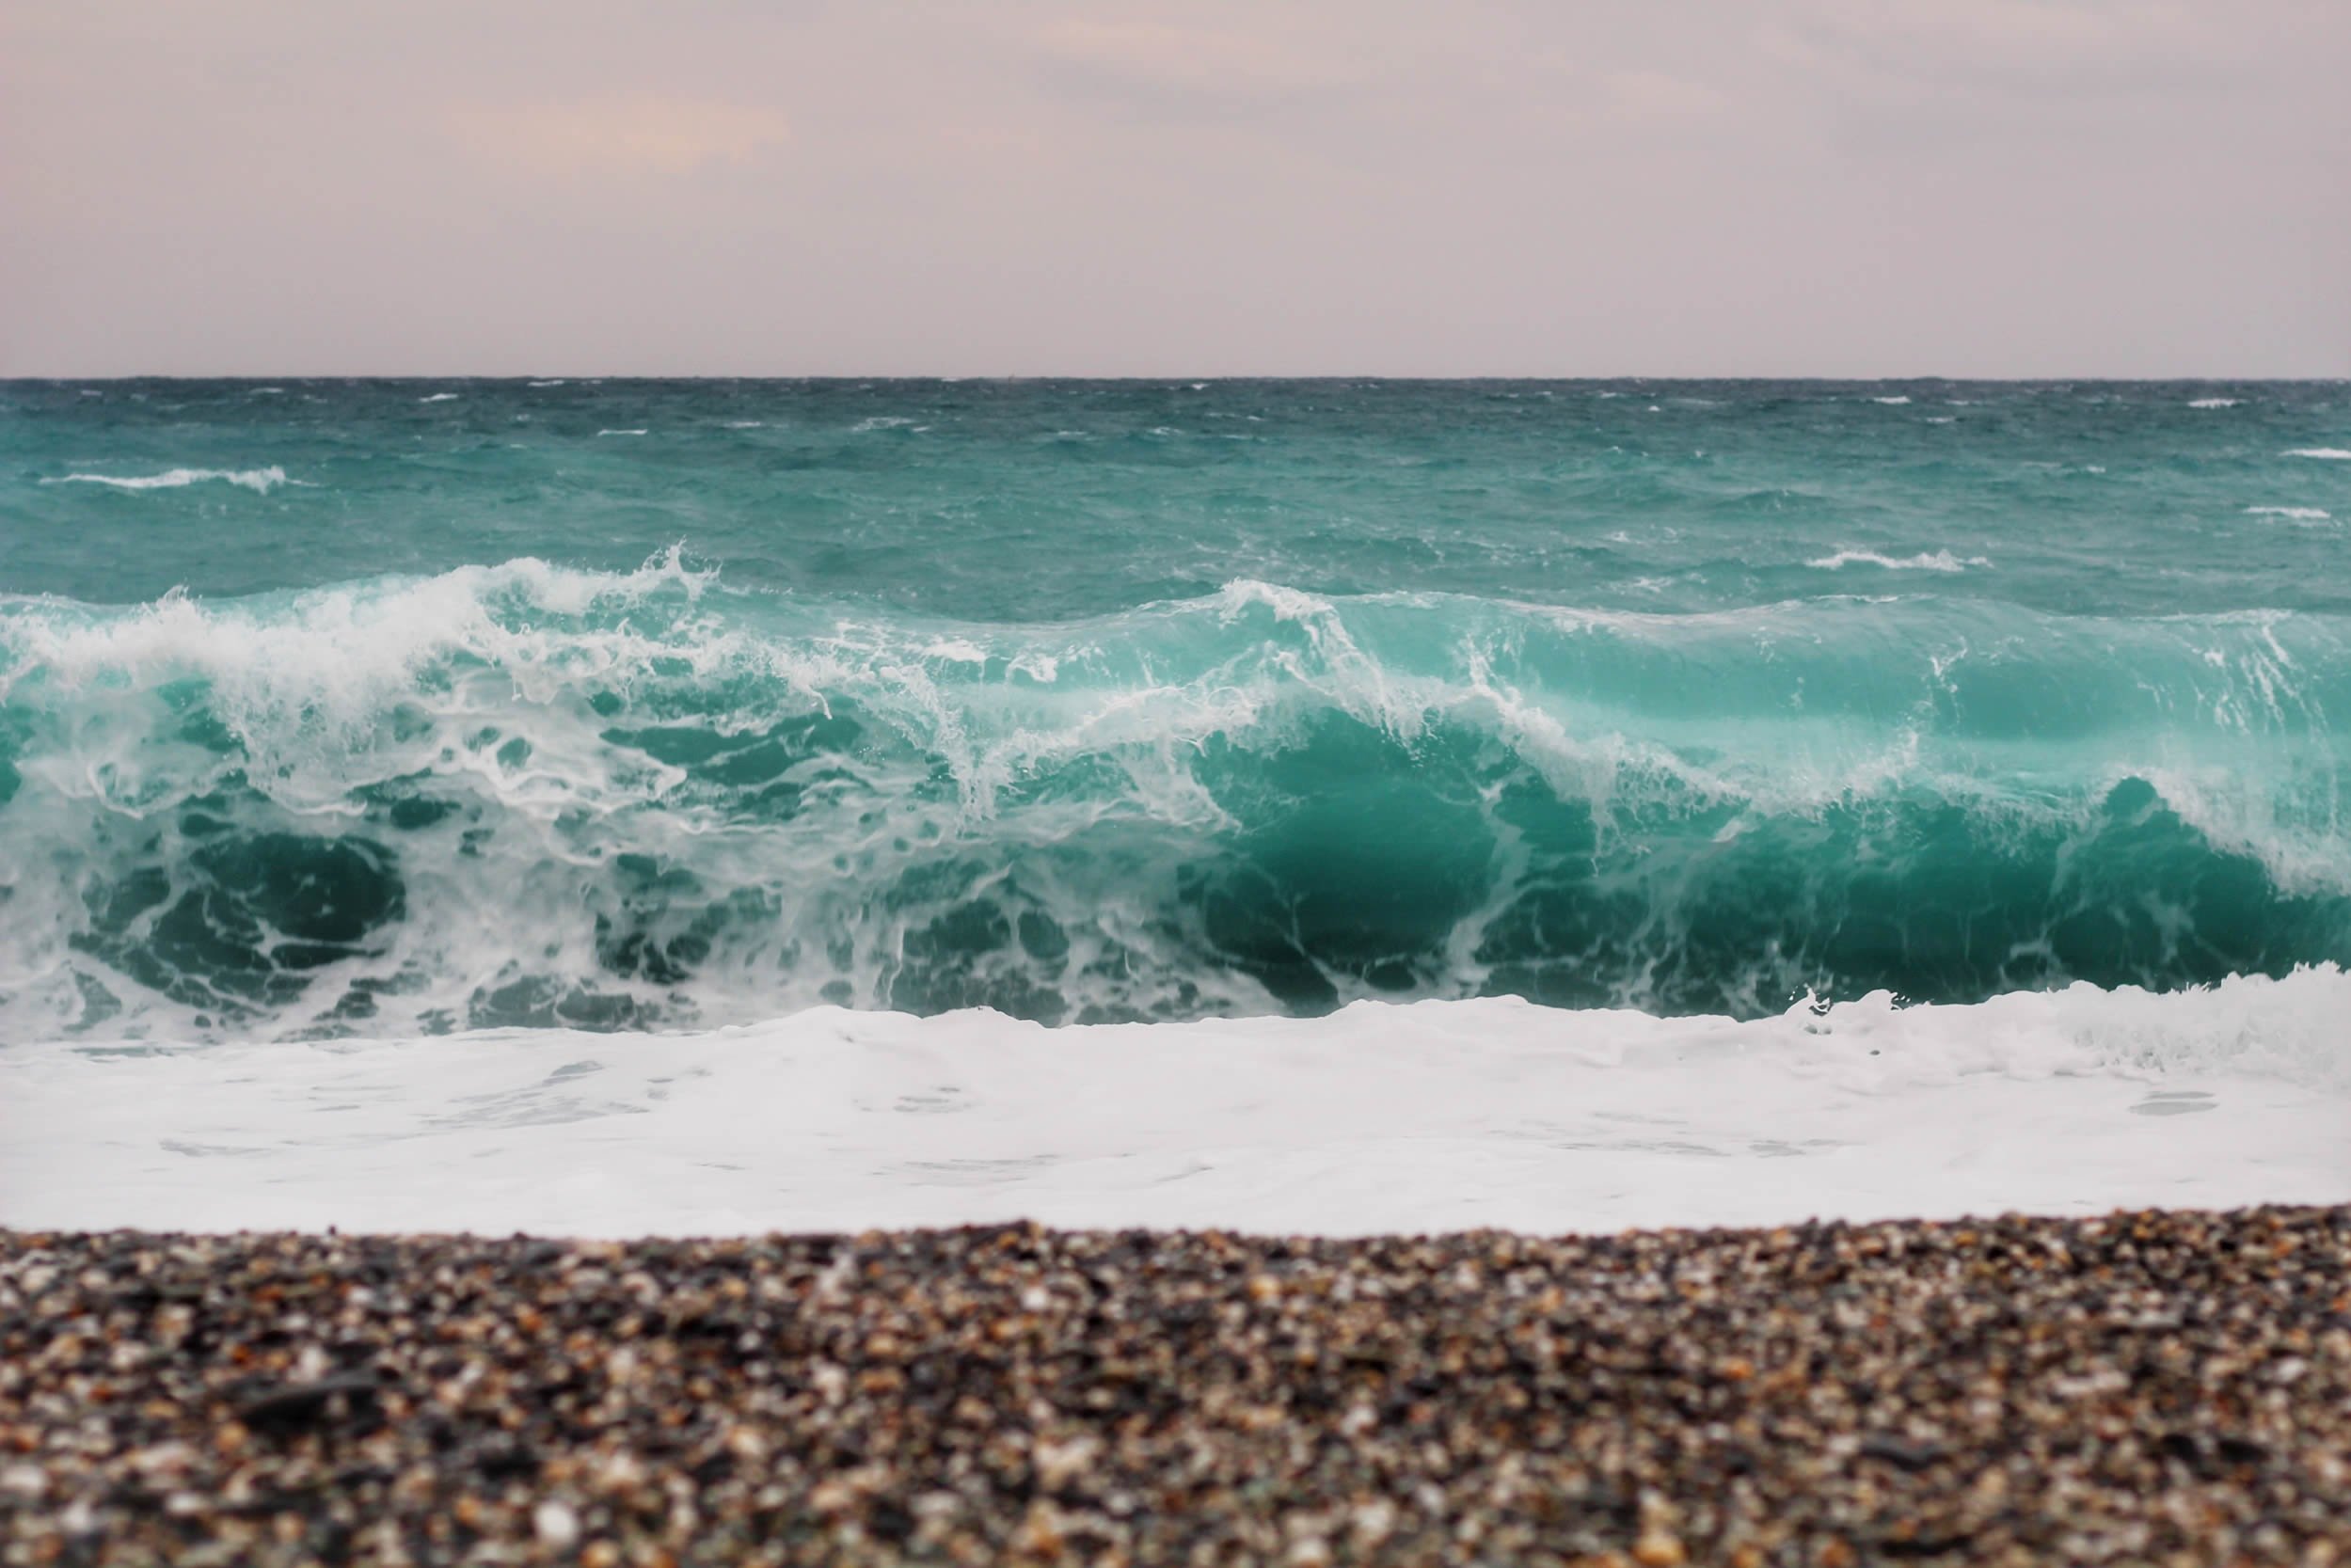 Берег время как вода. Пляж волны. Морская волна на берегу вид сверху гиф. Берег моря земля. Бирюзовая волна и побережье фото.